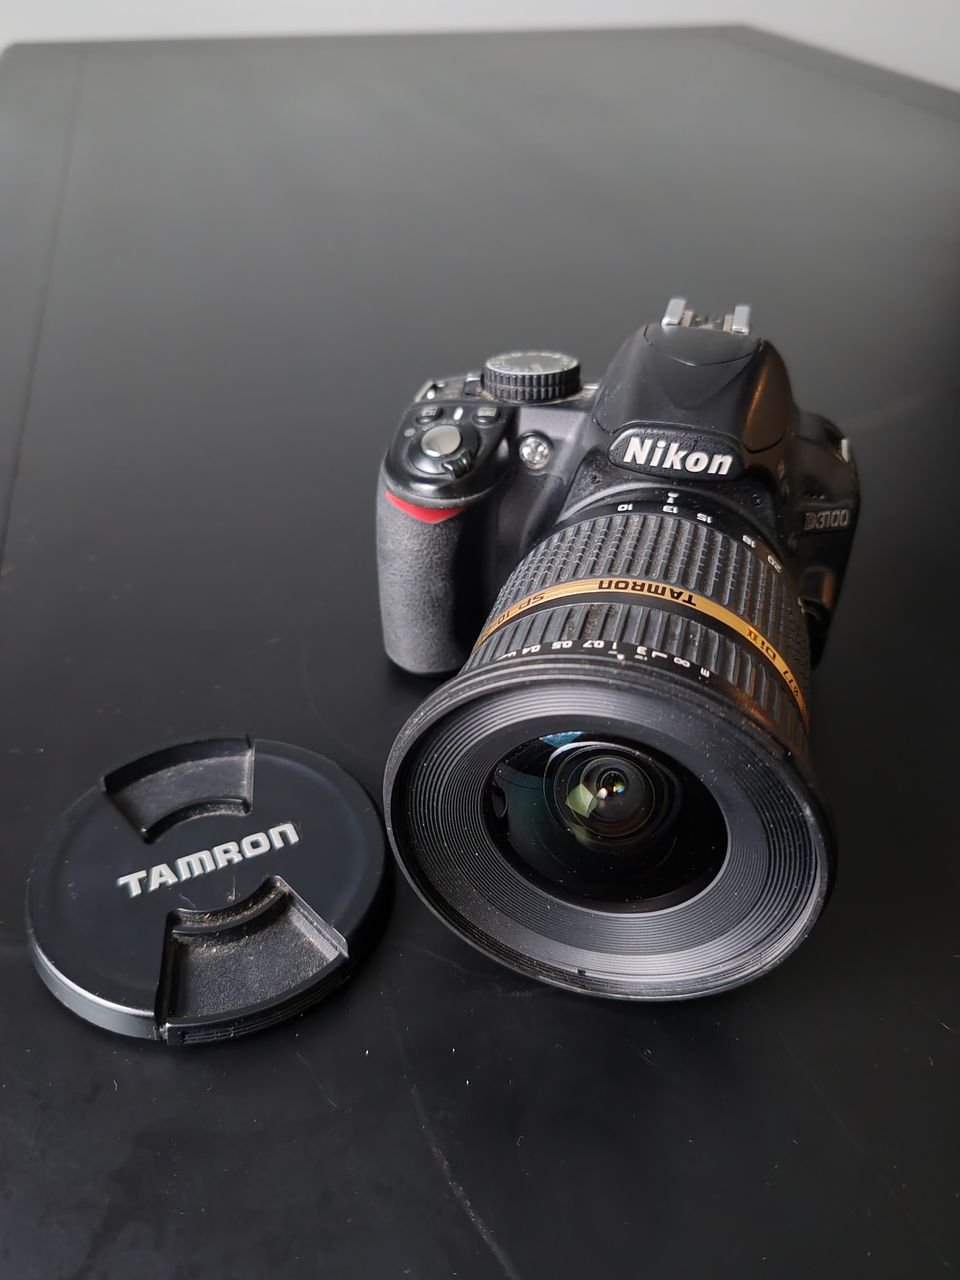 Nikon D3100 & Tamron sp 10-24mm f/3.5-4.5